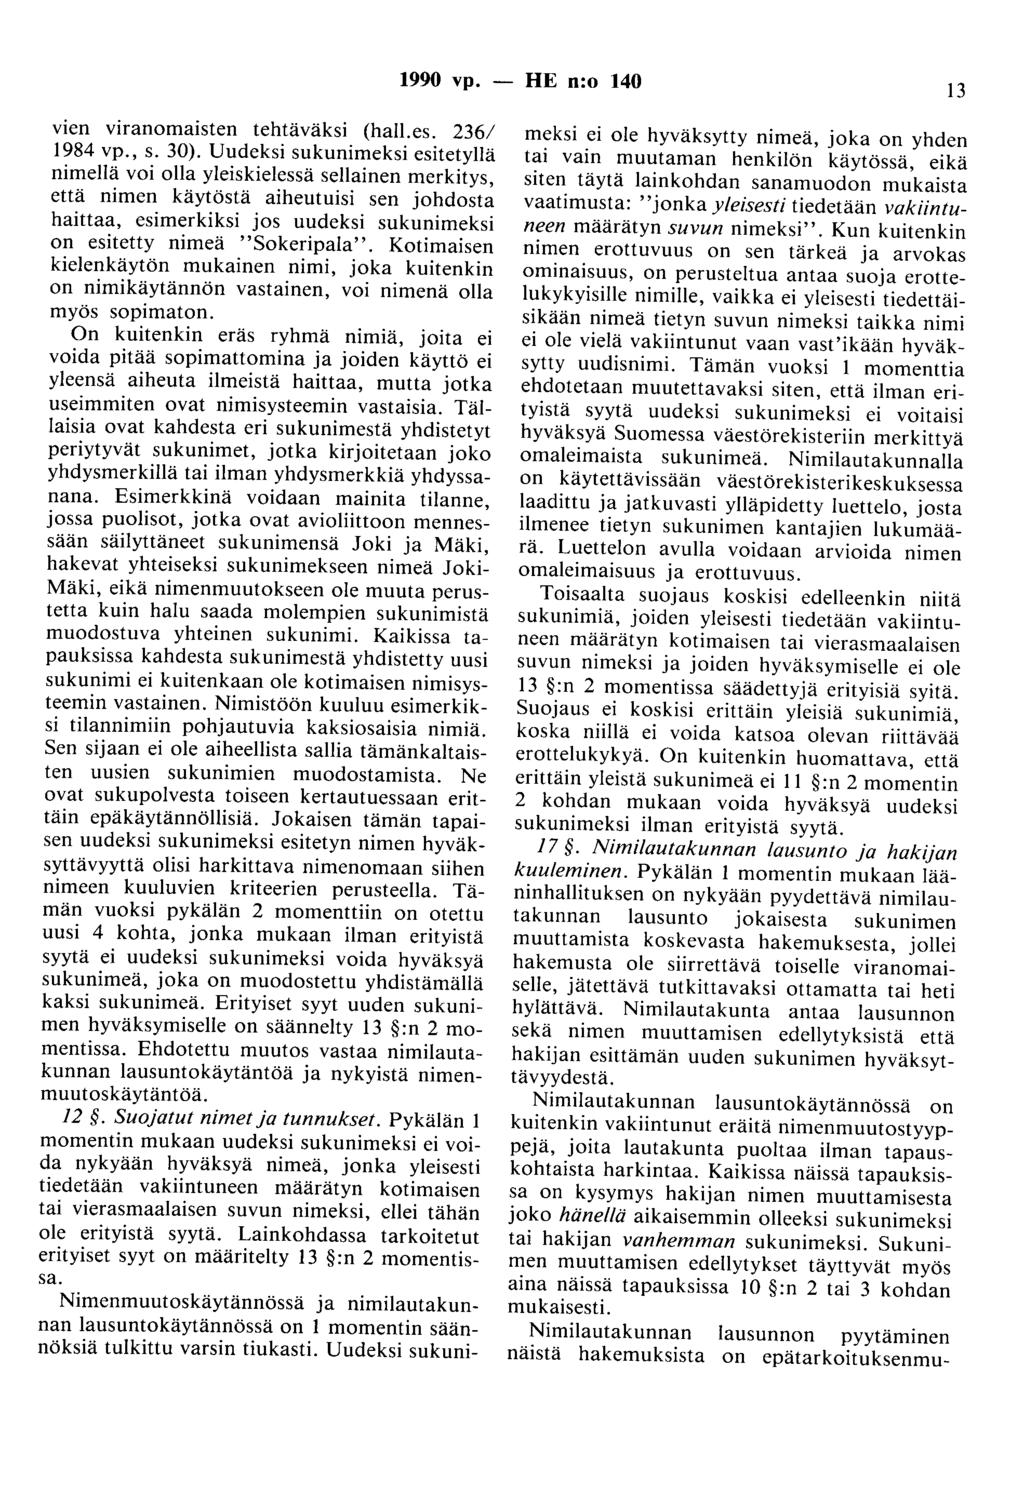 1990 vp. - HE n:o 140 13 vien viranomaisten tehtäväksi (hall.es. 236/ 1984 vp., s. 30).